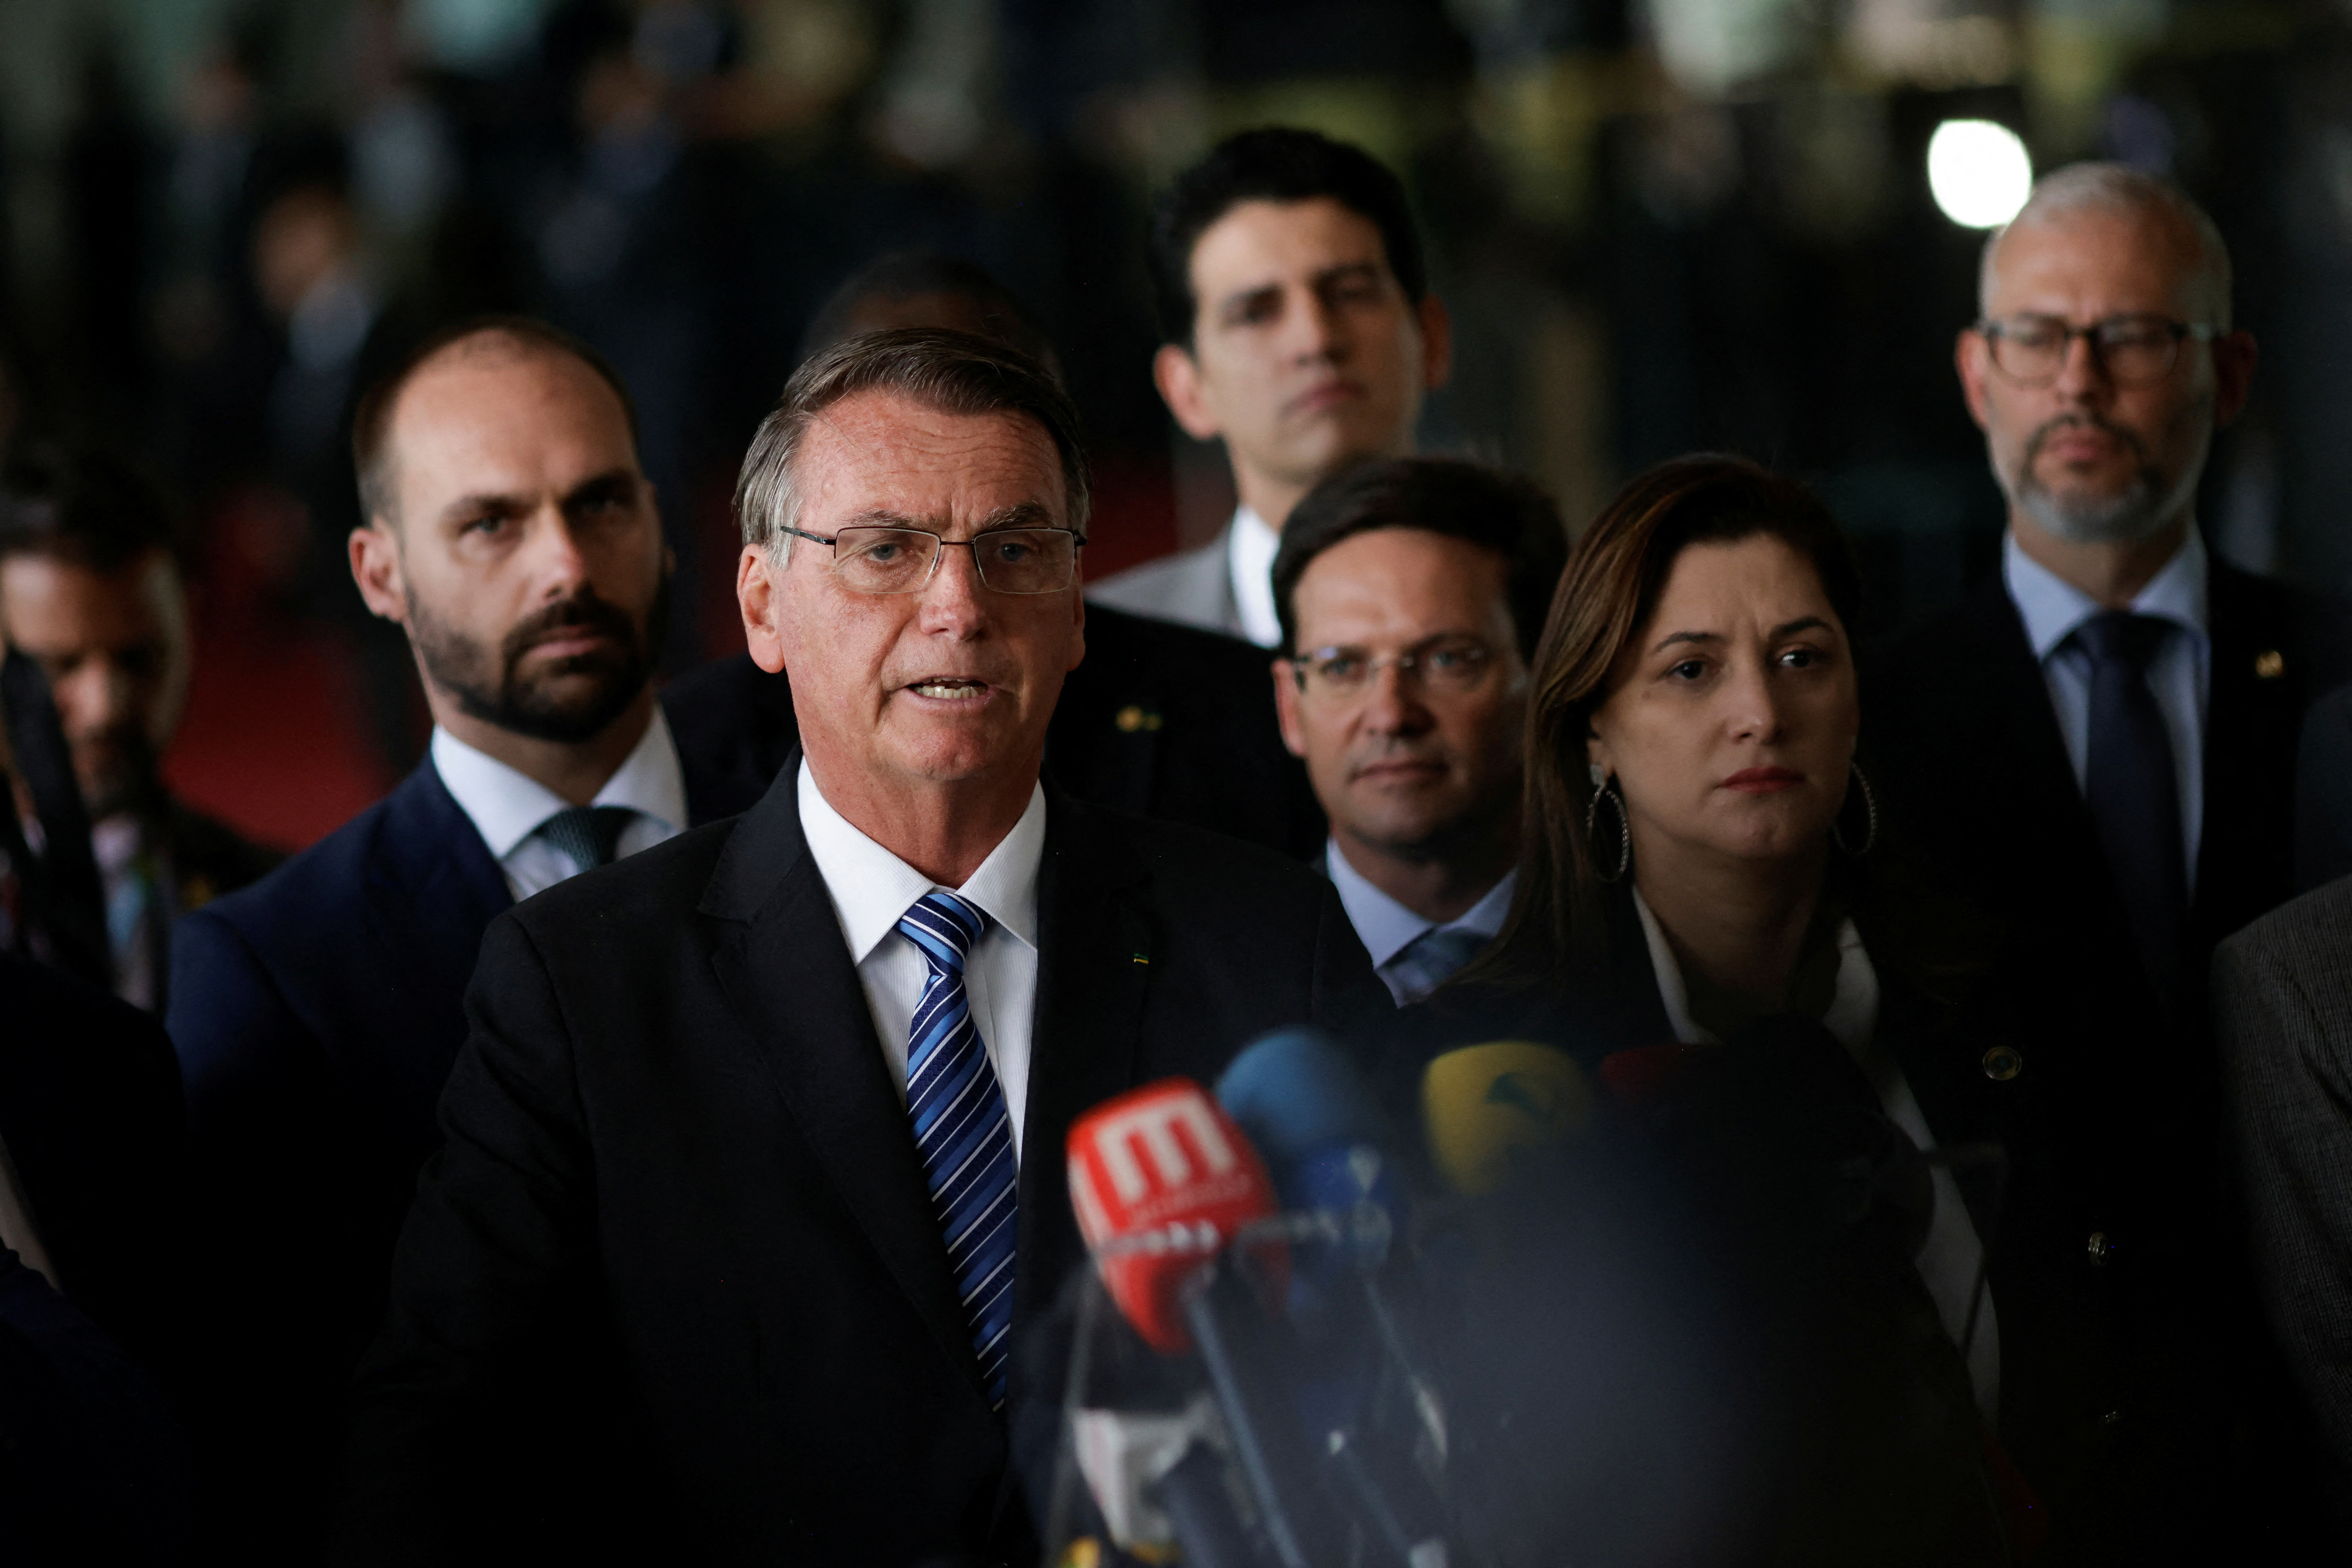 Brazil's President Jair Bolsonaro gives press statement at Alvorada Palace in Brasilia